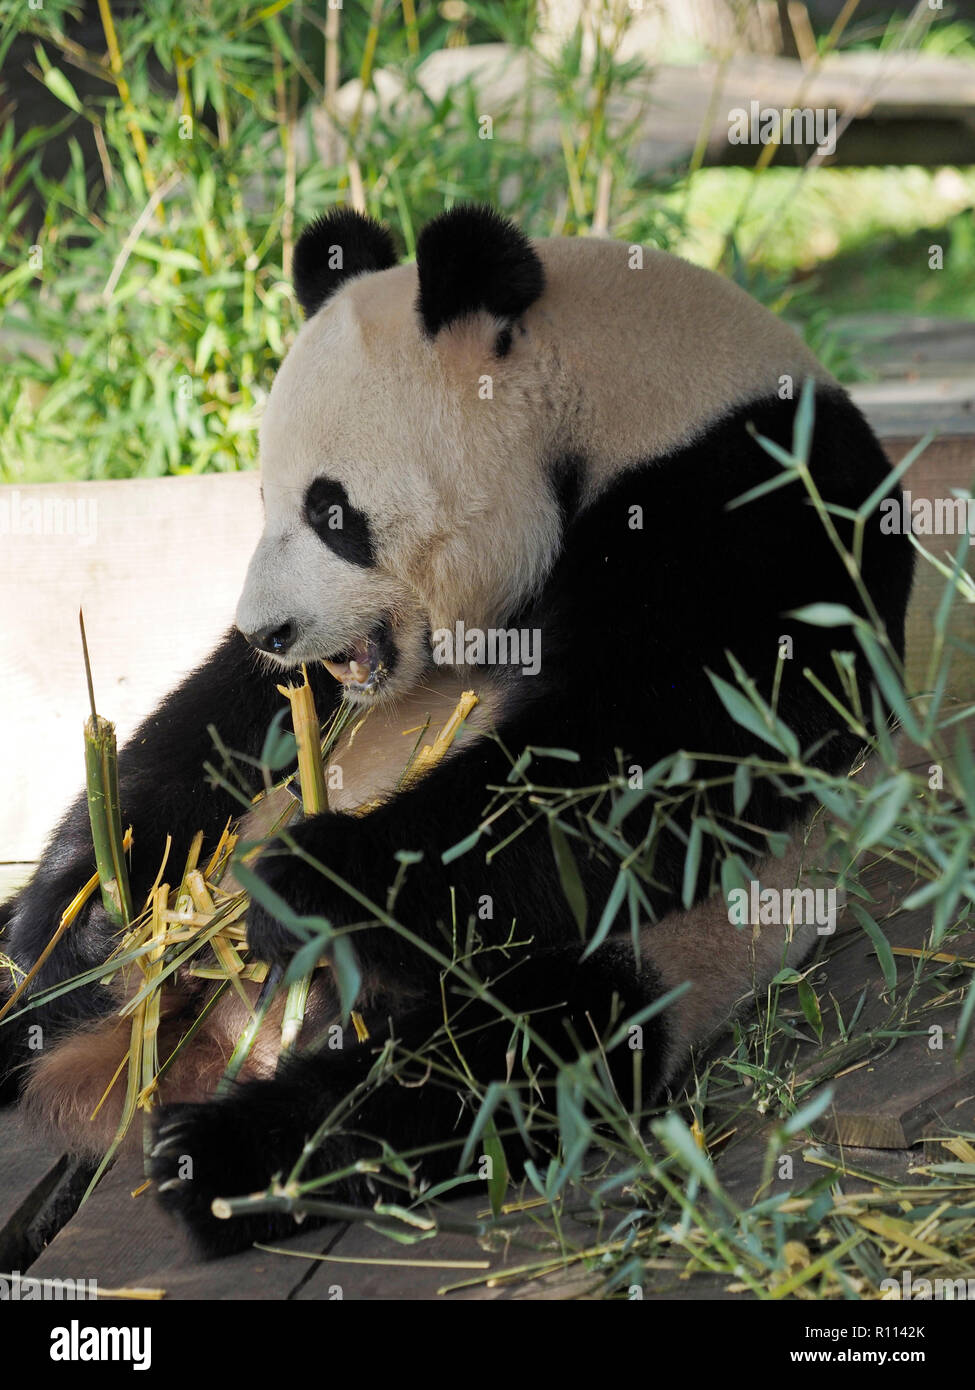 Gigantesco orso panda seduto mentre mangiando bambù, lo zoo di Rhenen, Paesi Bassi. Panda orsi sono molto rare in giardini zoologici al di fuori della Cina, a causa della loro dieta speciale. Foto Stock